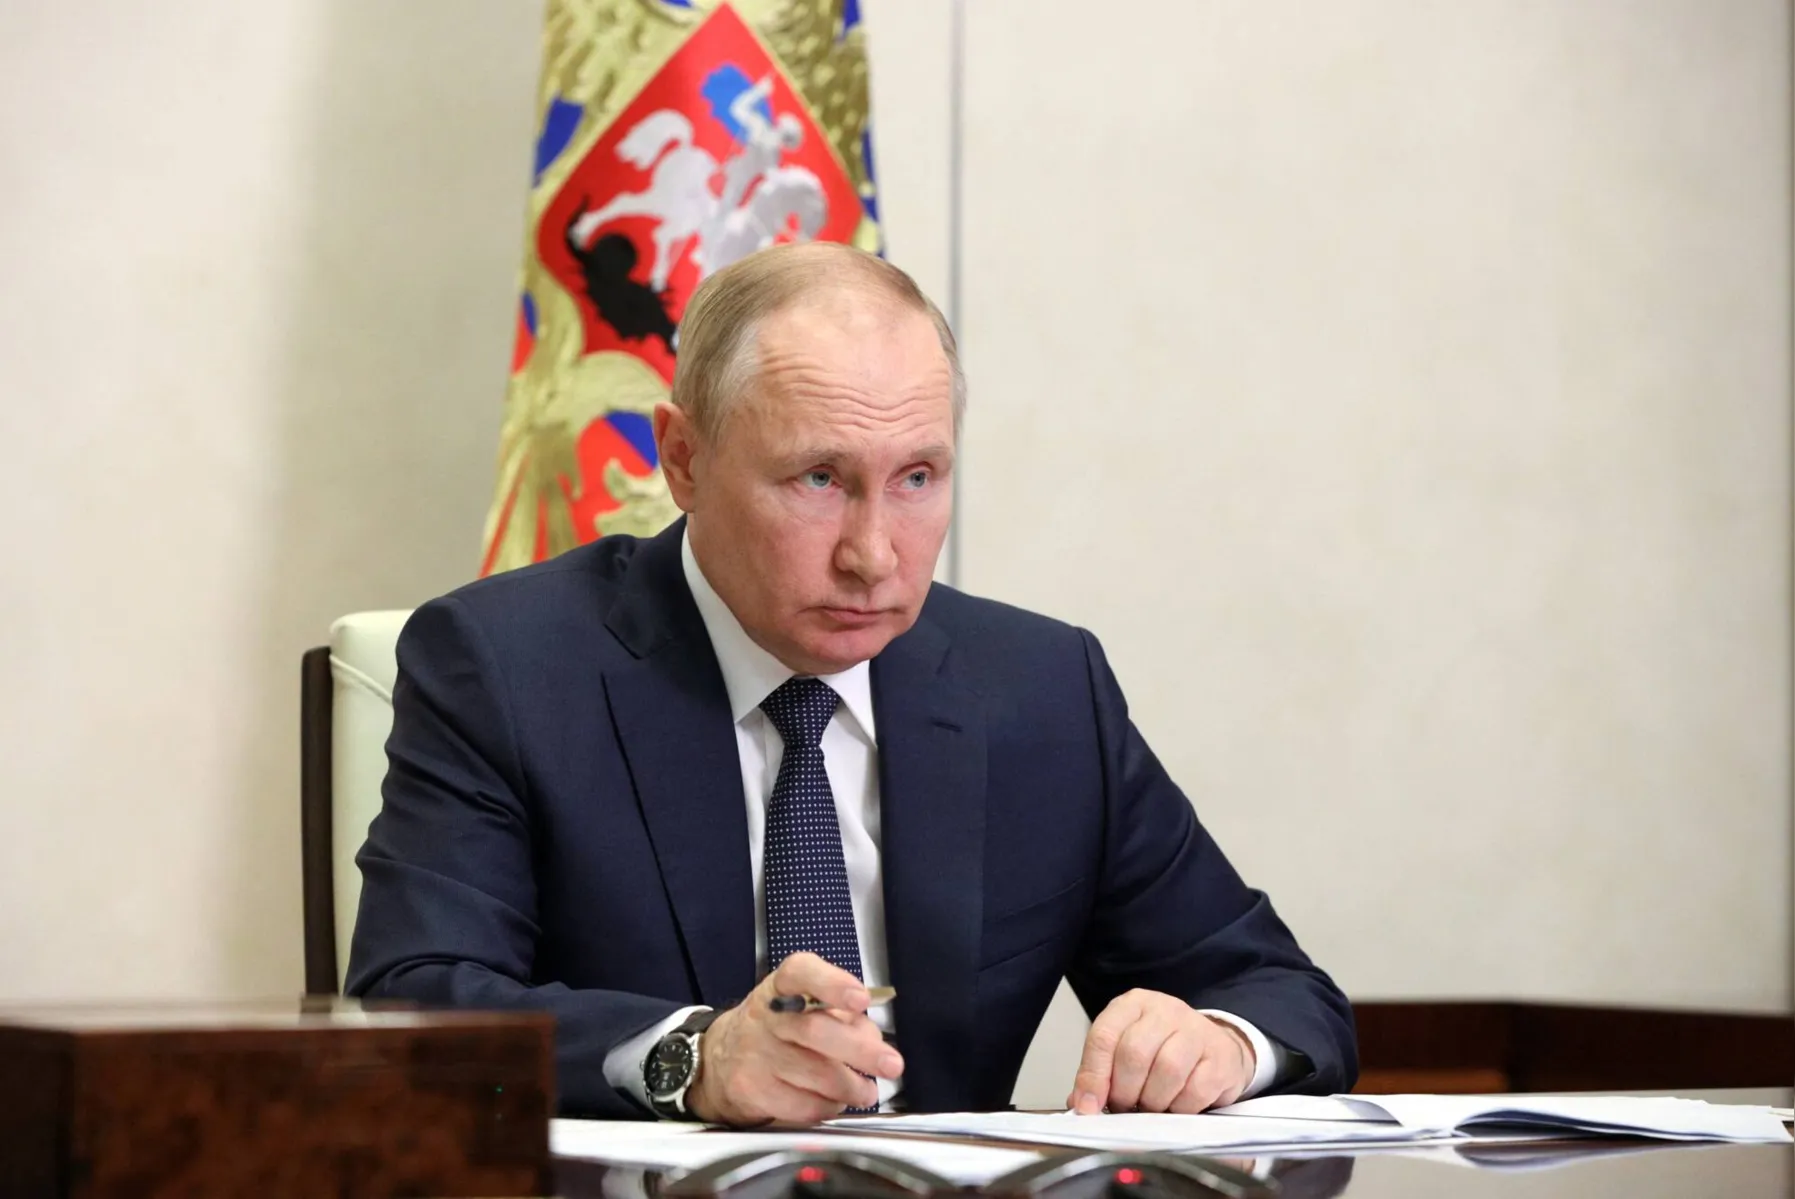 Mikhail Klimentyev/Sputnik/AFP 

As declarações de Putin vêm em meio a discussões da UE sobre novo pacote de sanções contra Moscou